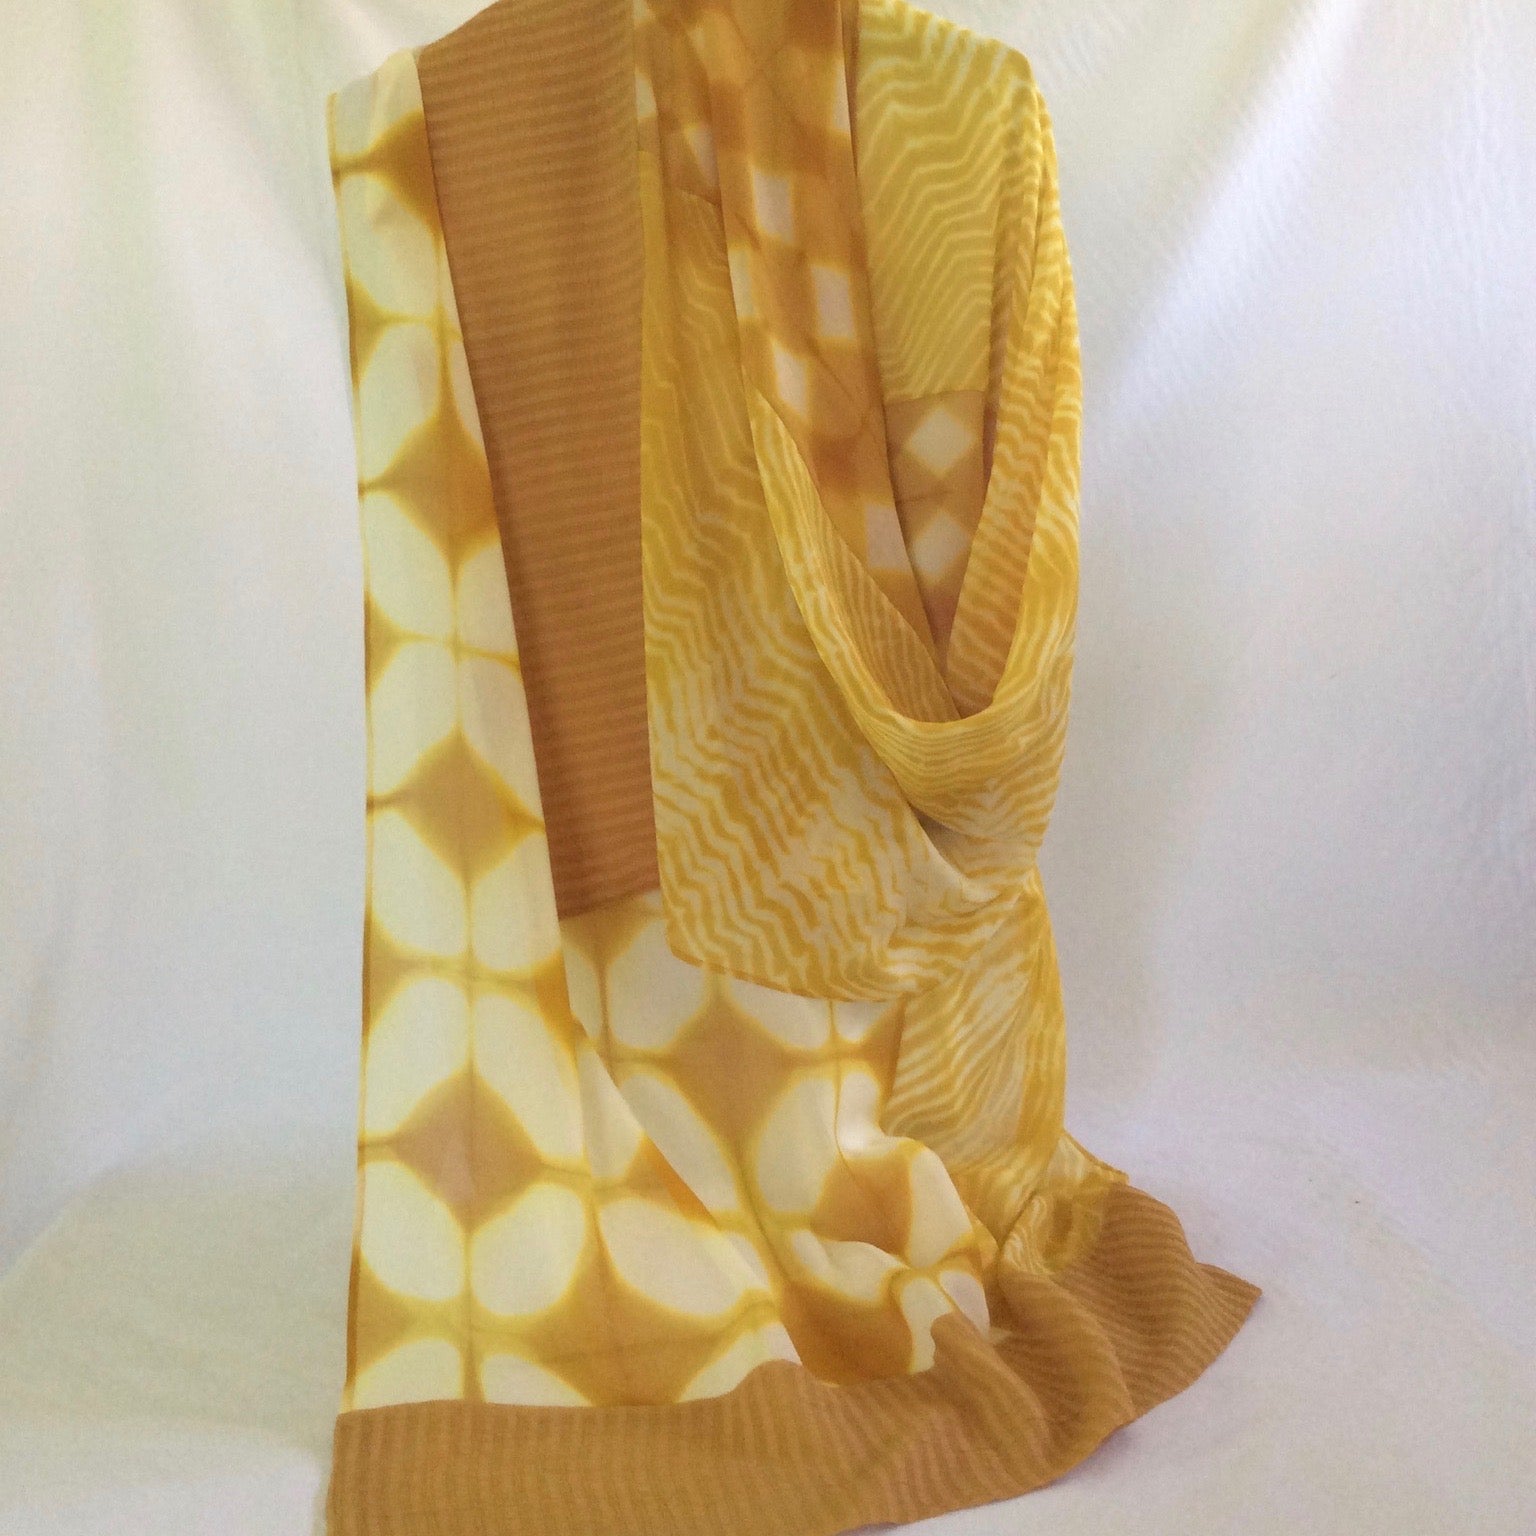 Silk wrap by Carolyn Cabena